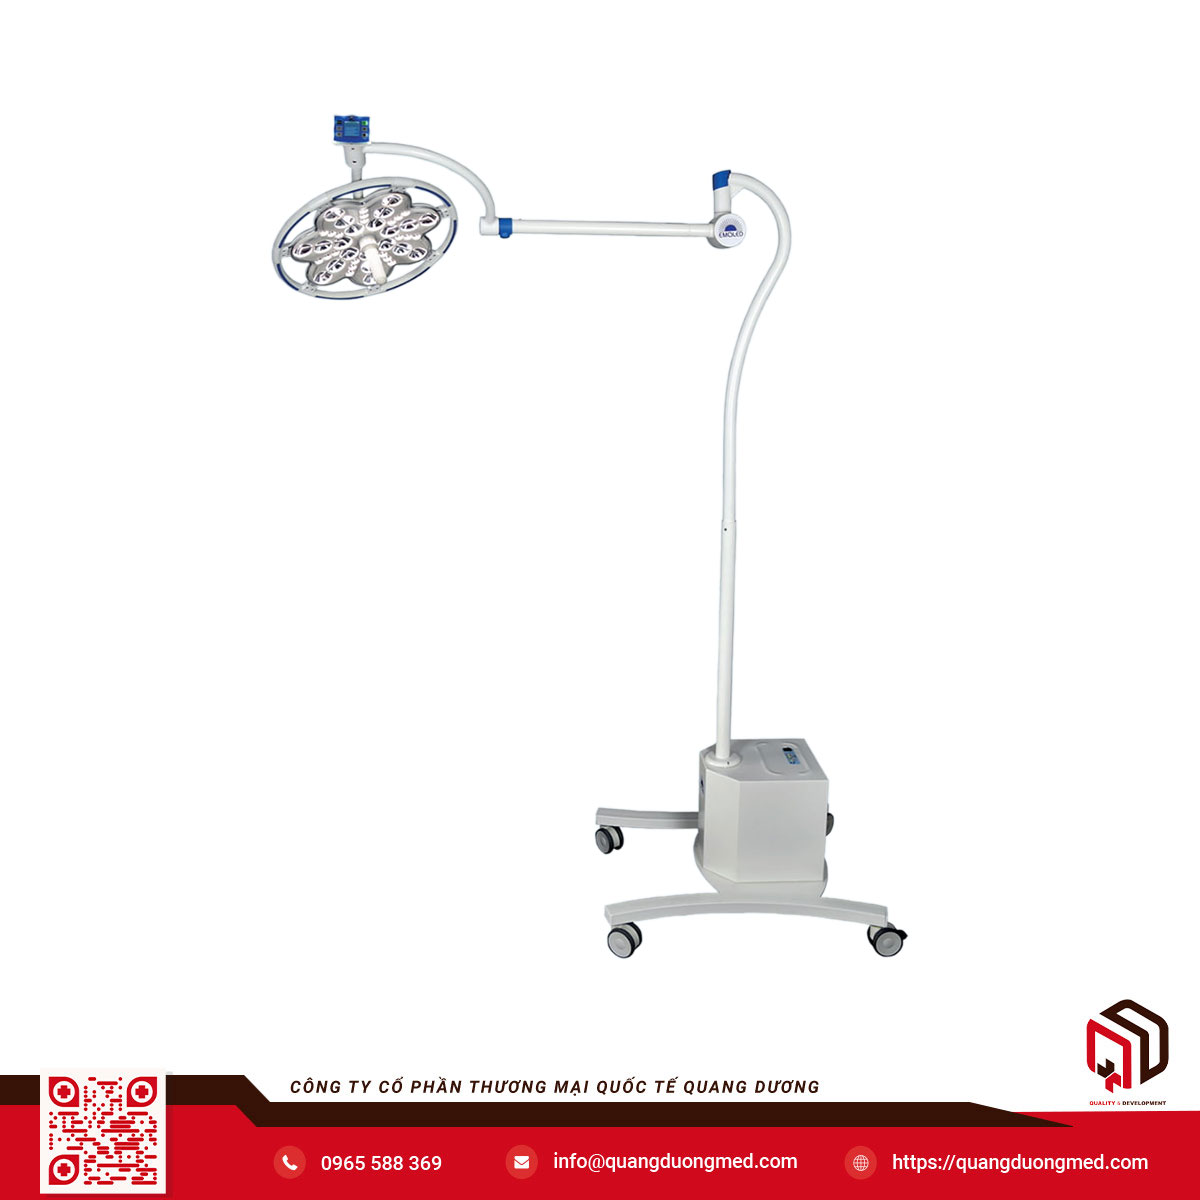 Model: EMALED 300M - Đèn phẫu thuật di động có pin dự phòng